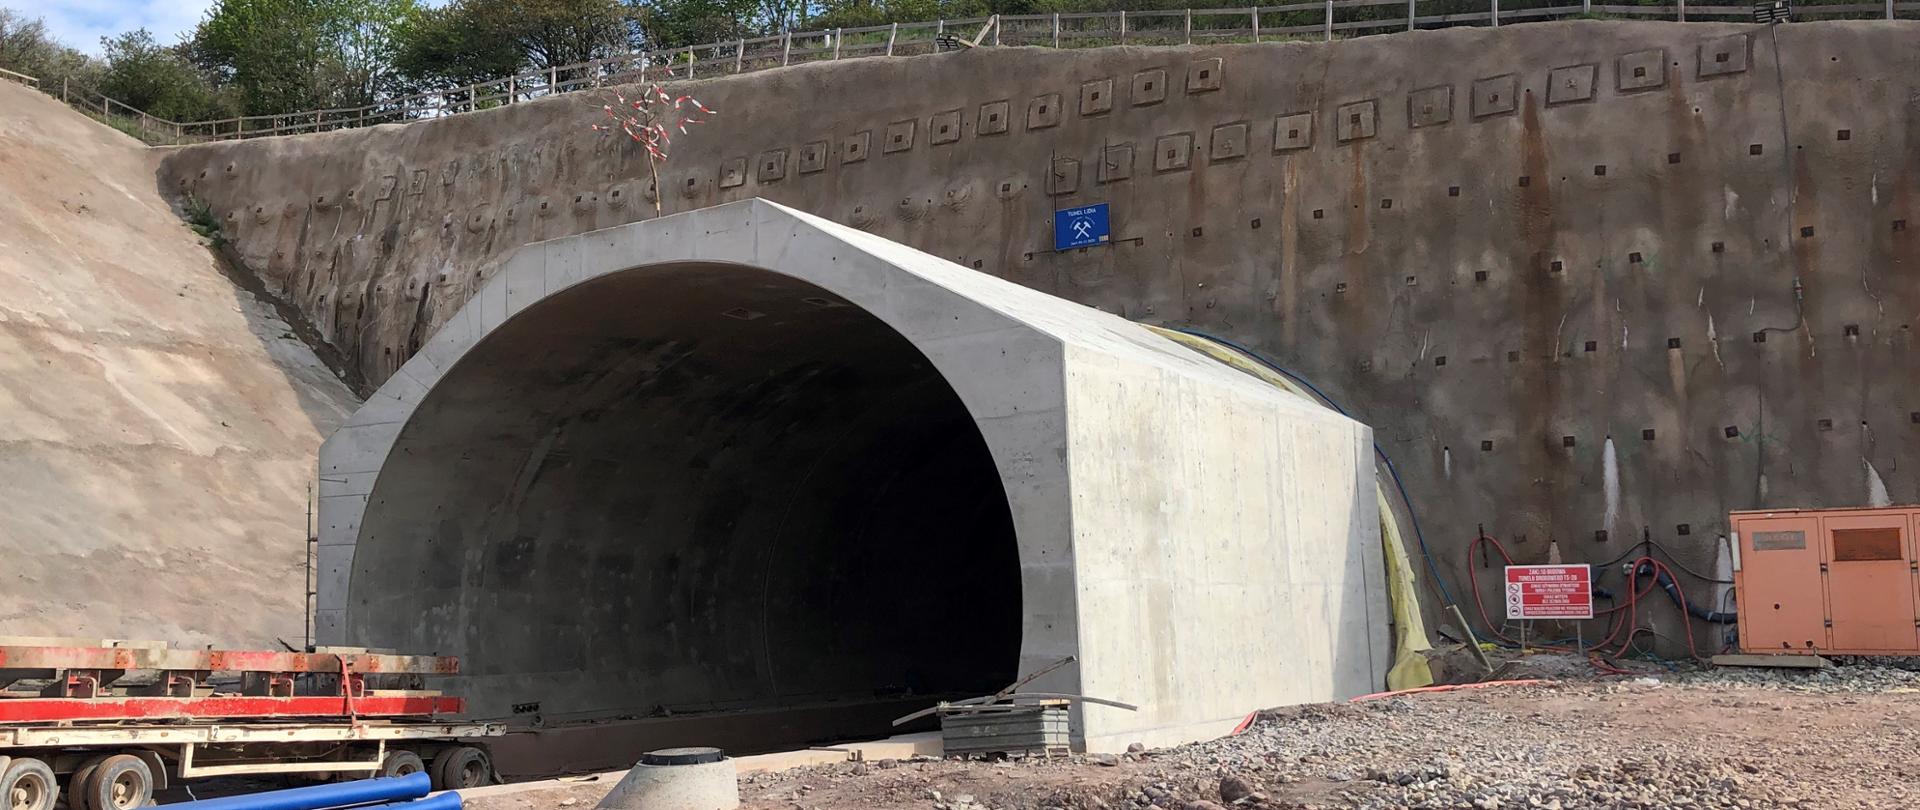 fot. 6.2. S3 - tunel TS-26 - koniec betonowania - fot. Maciej Stec/PORR